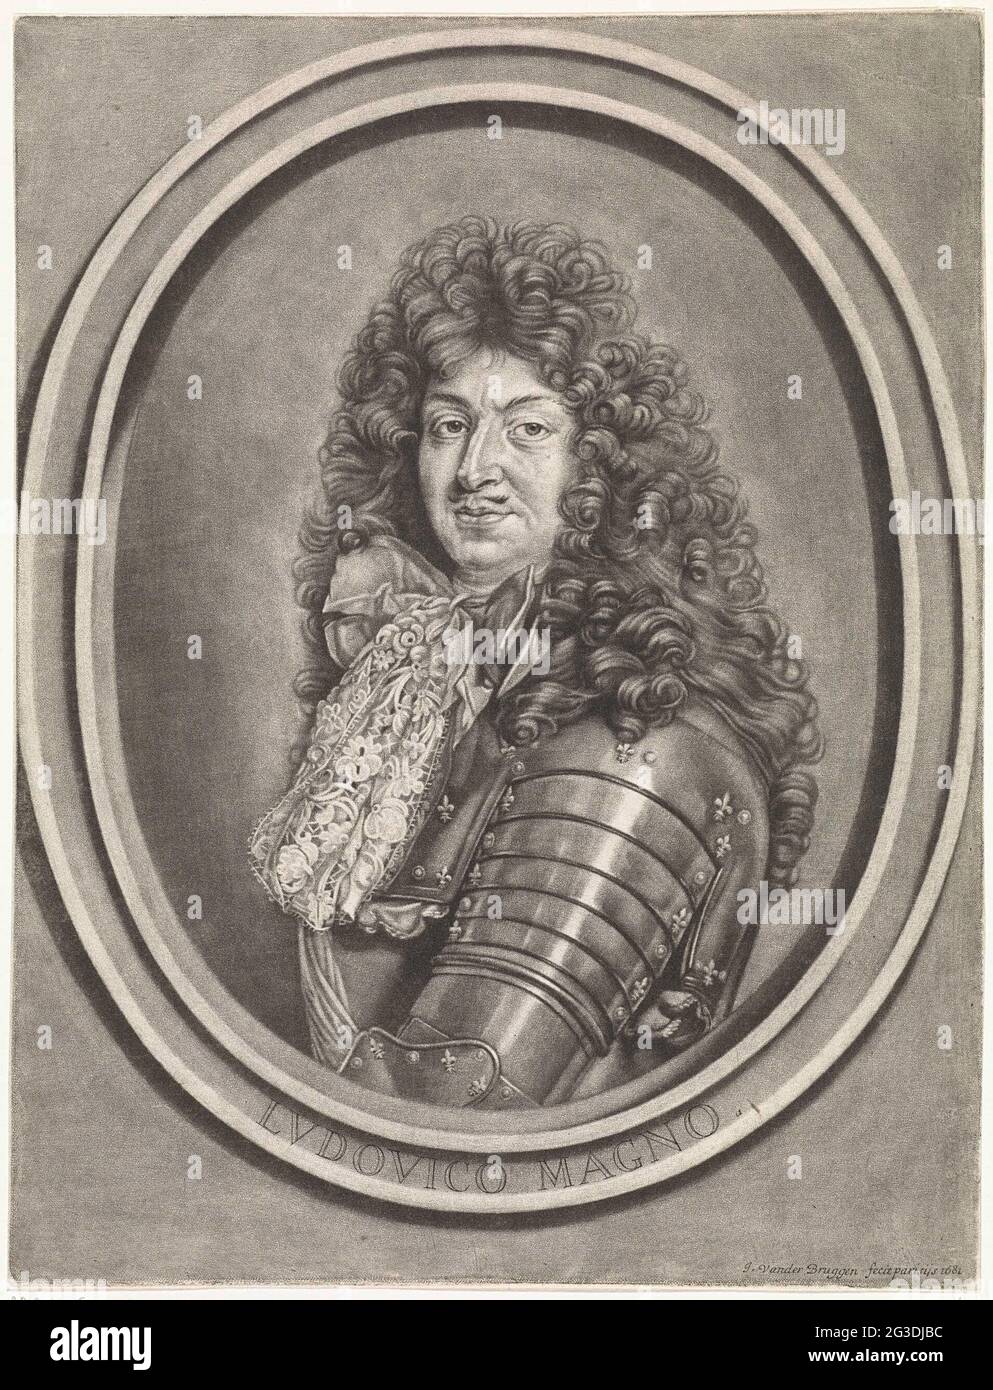 Portrait de Louis XIV, roi de France; Ludovico Magno. Portrait de Louis XIV,  roi de France. Il porte un harnais avec collier en dentelle et un long  programme d'études Photo Stock -